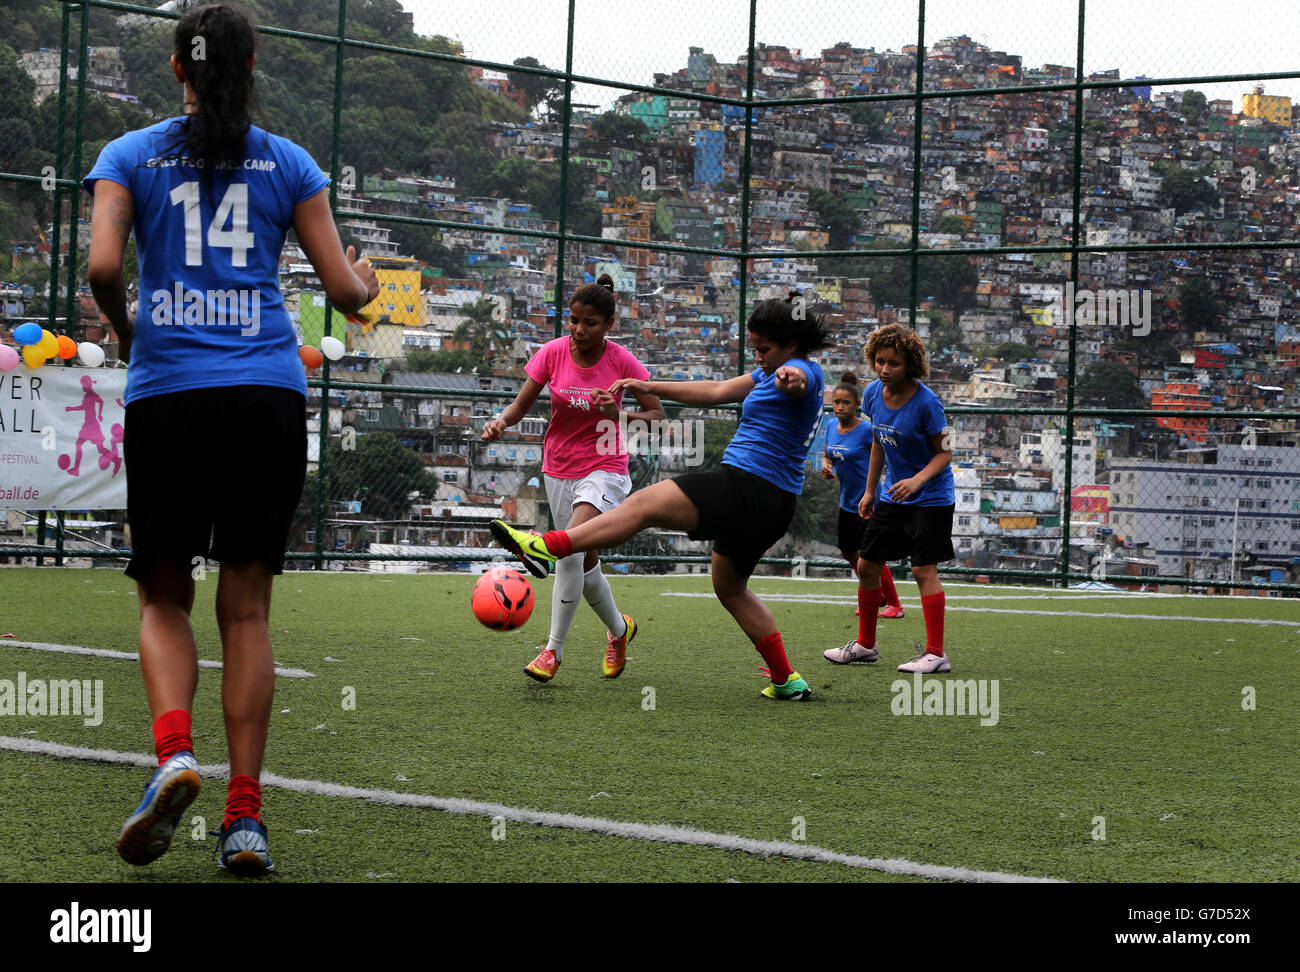 Football - coupe du monde de la FIFA 2014 - vues sur la ville de Rio de Janeiro.Rio de Janeiro, Brésil vues de la vie quotidienne à Rocinha Favela avec le tournoi de football féminin Banque D'Images